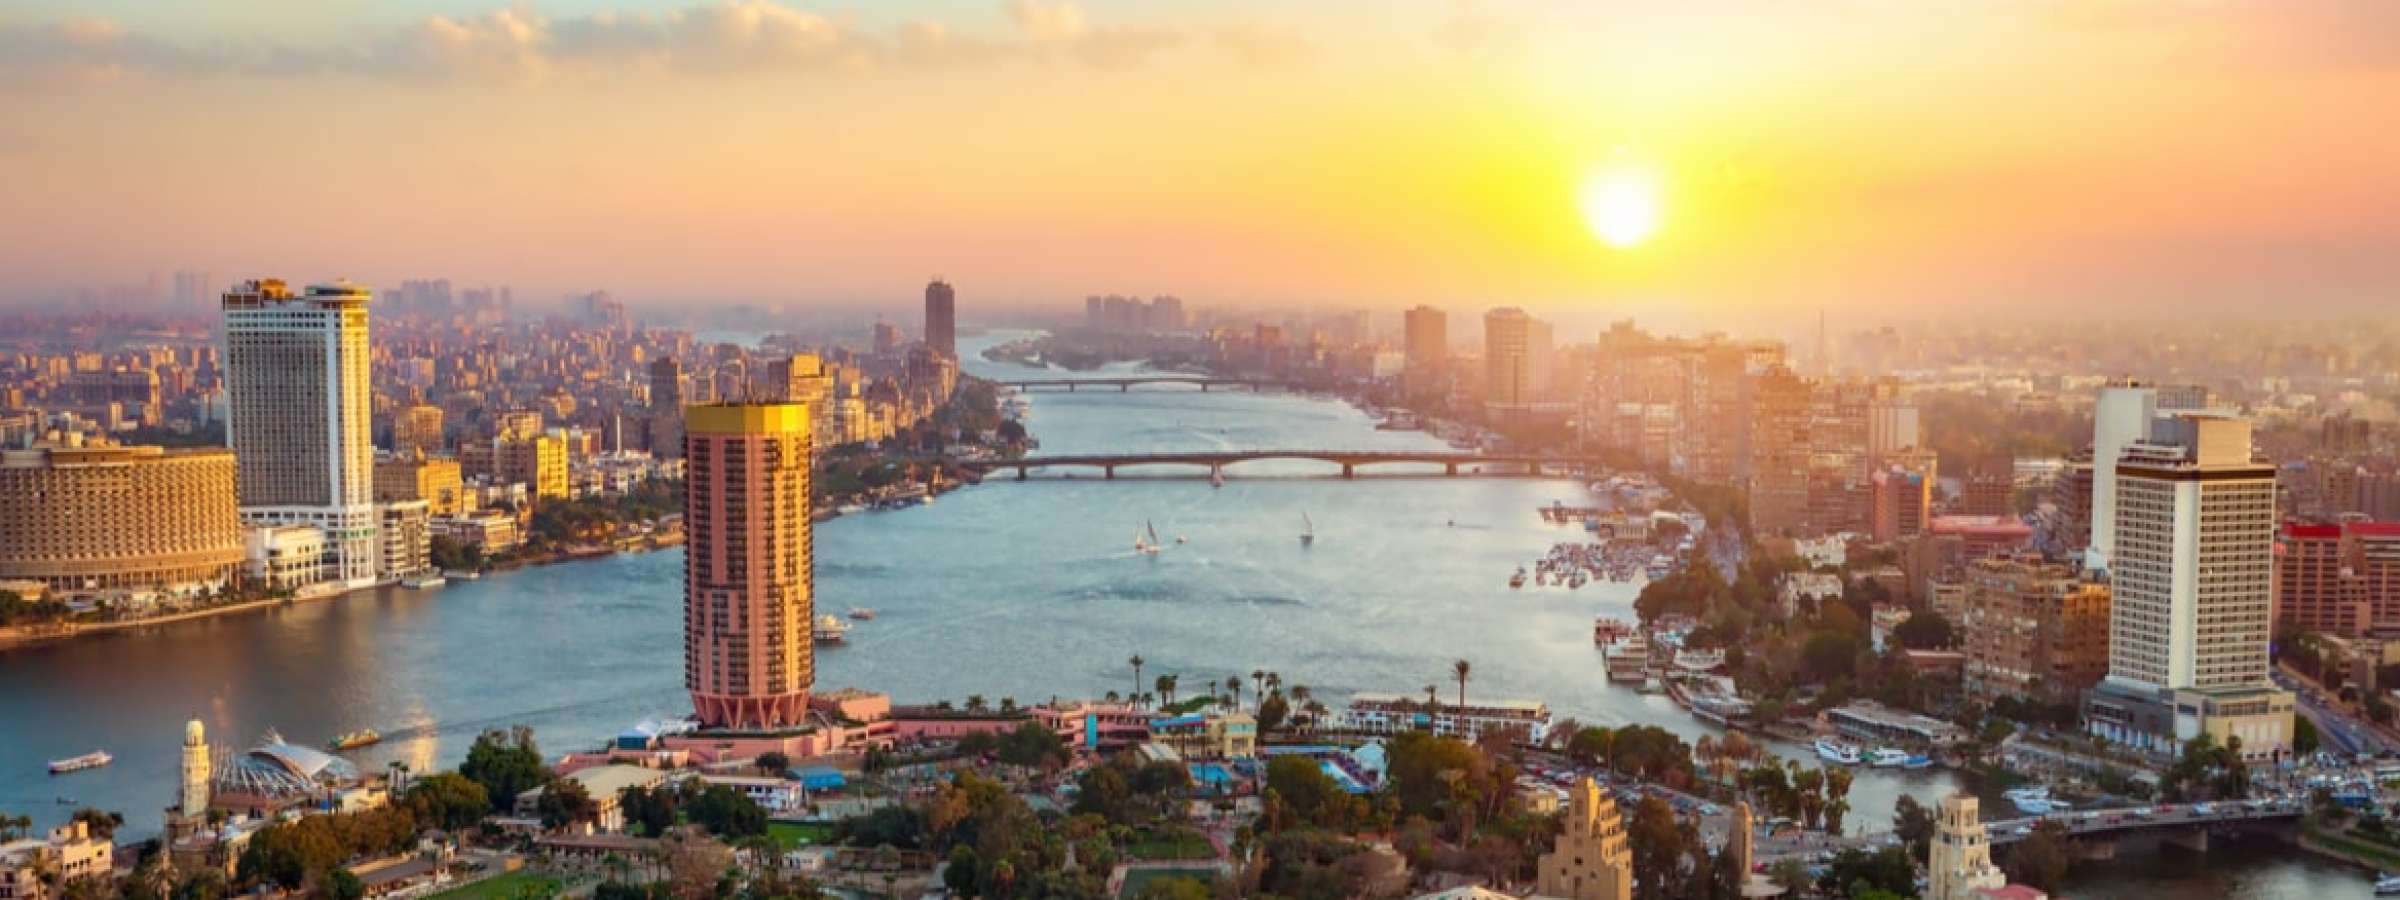 Panoramic view of Cairo, Egypt